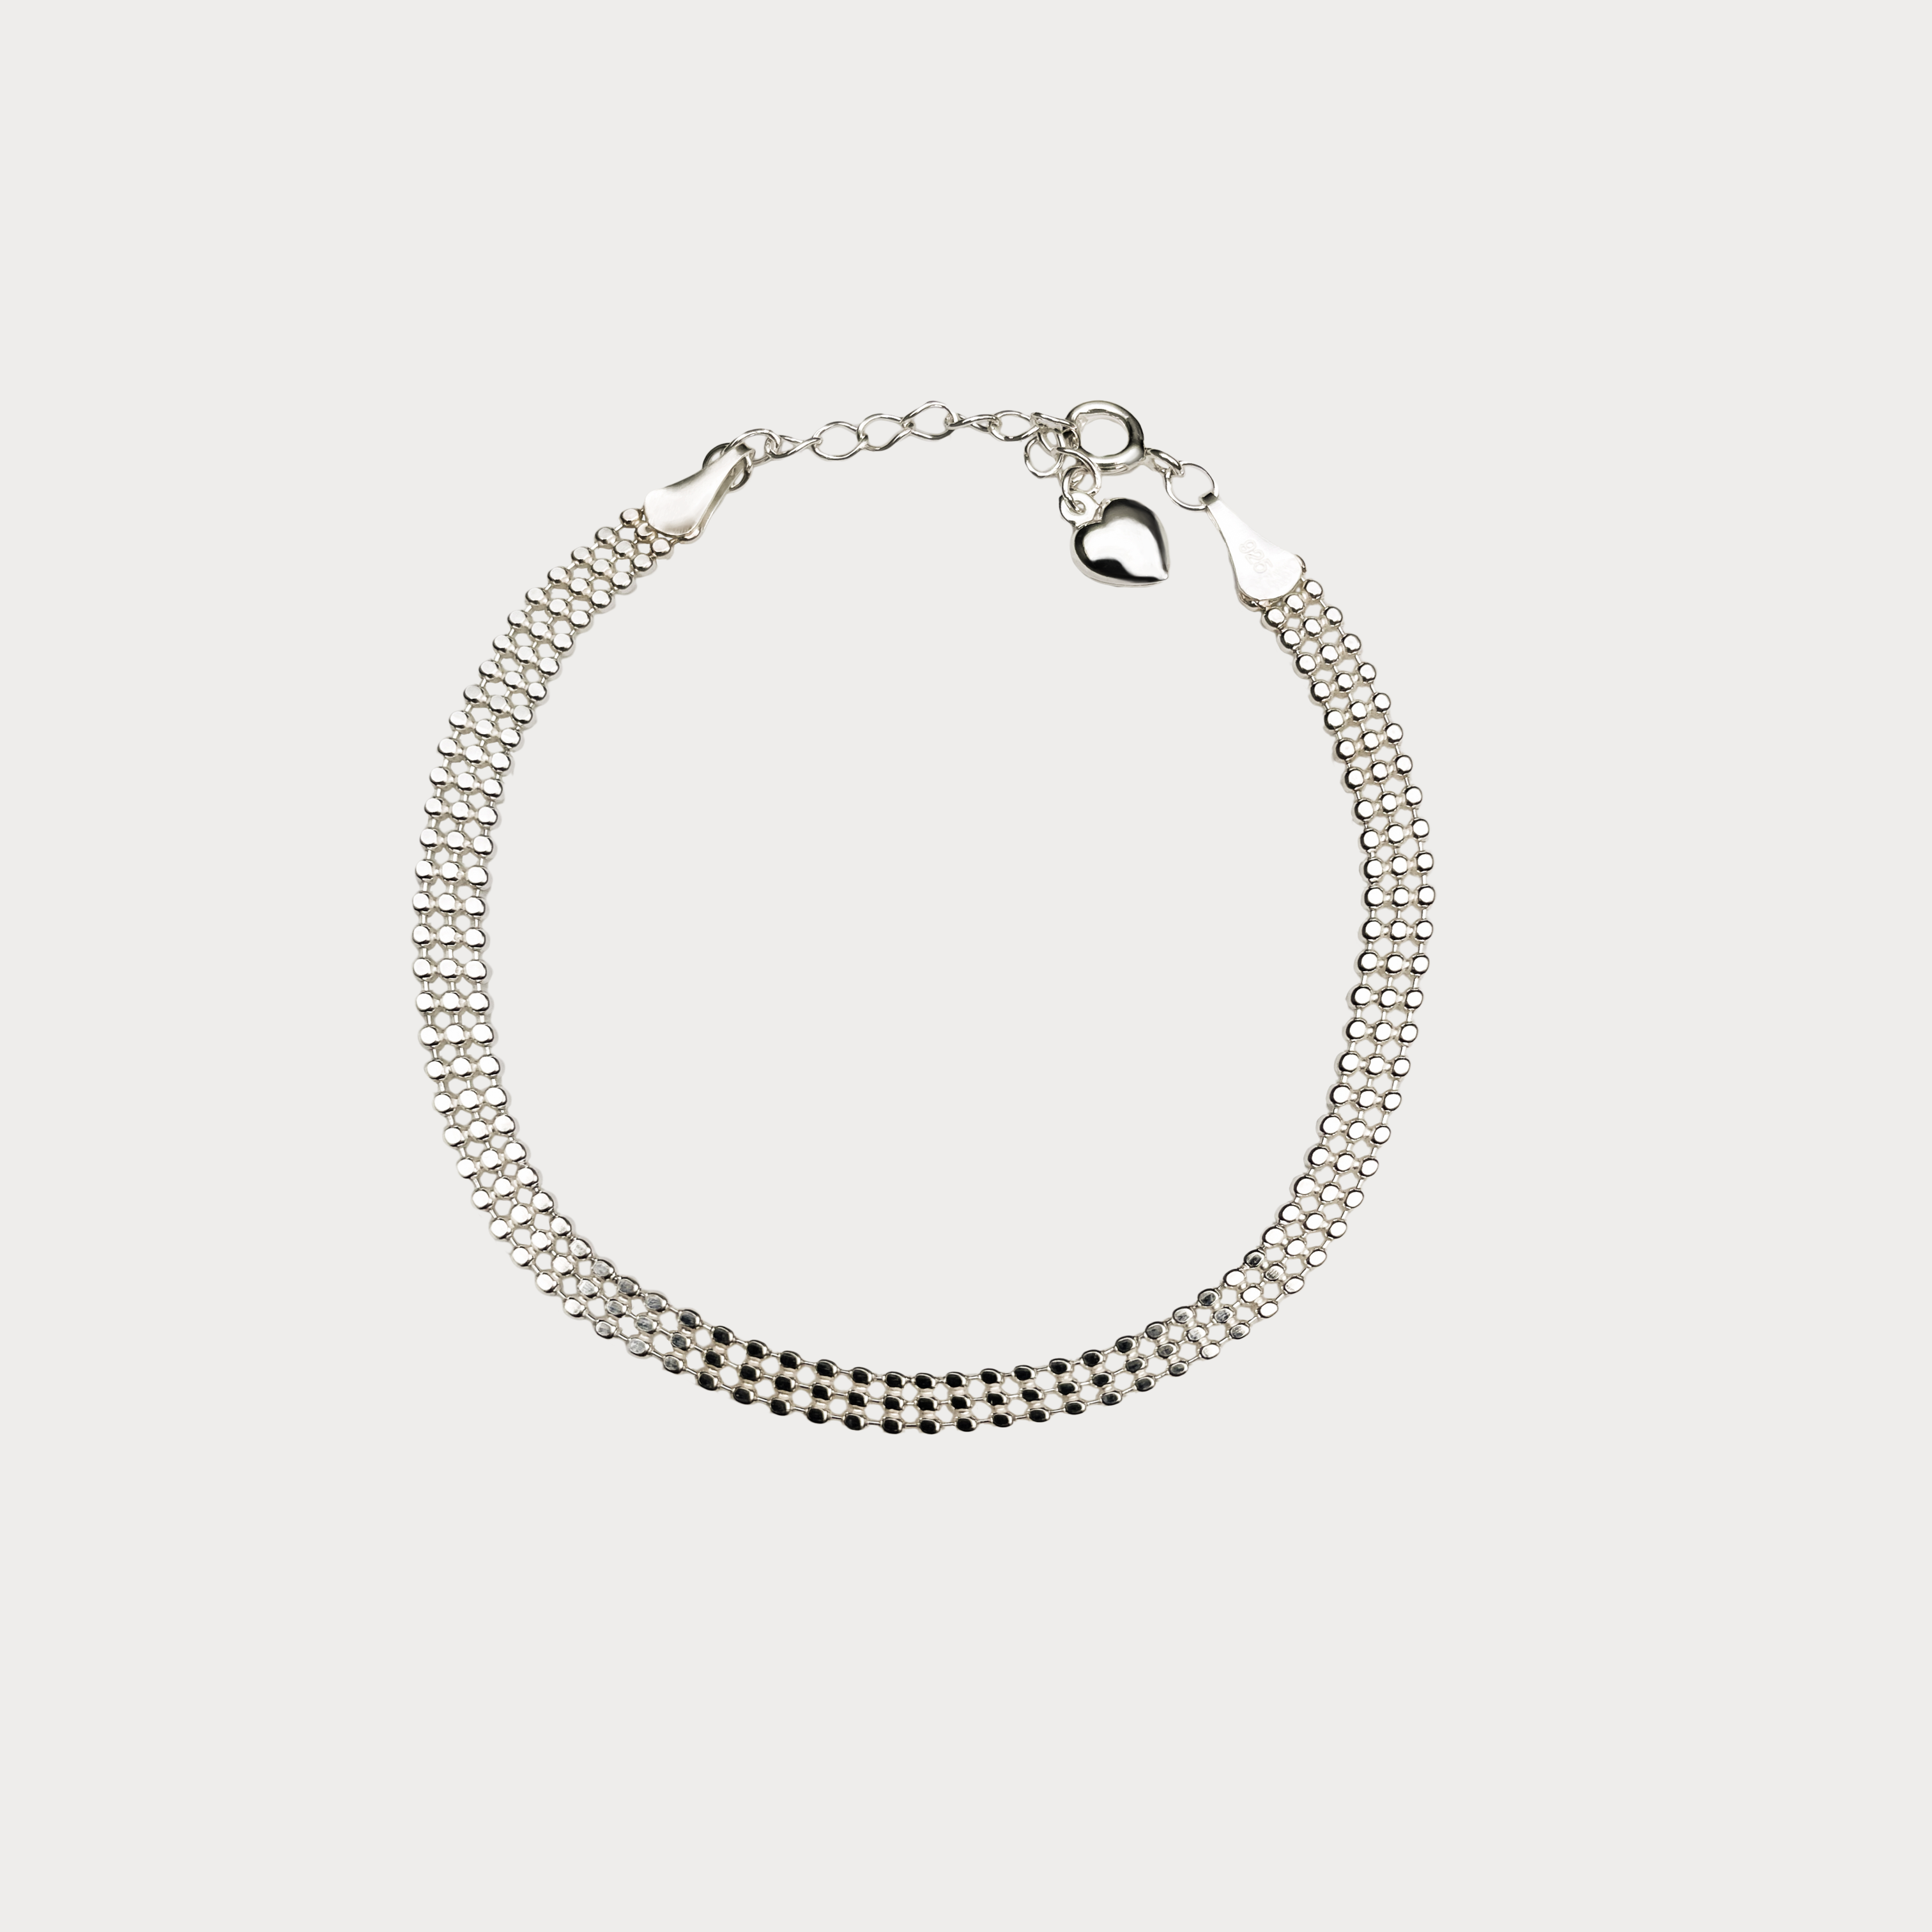 Sterling Silver Triple Ball Bracelet BlackSugar-Best Online Jewelry Earrings, Necklaces. Korean Fashion Jewelry.  Find Your Favorite Jewelry that Kpop Stars Wear